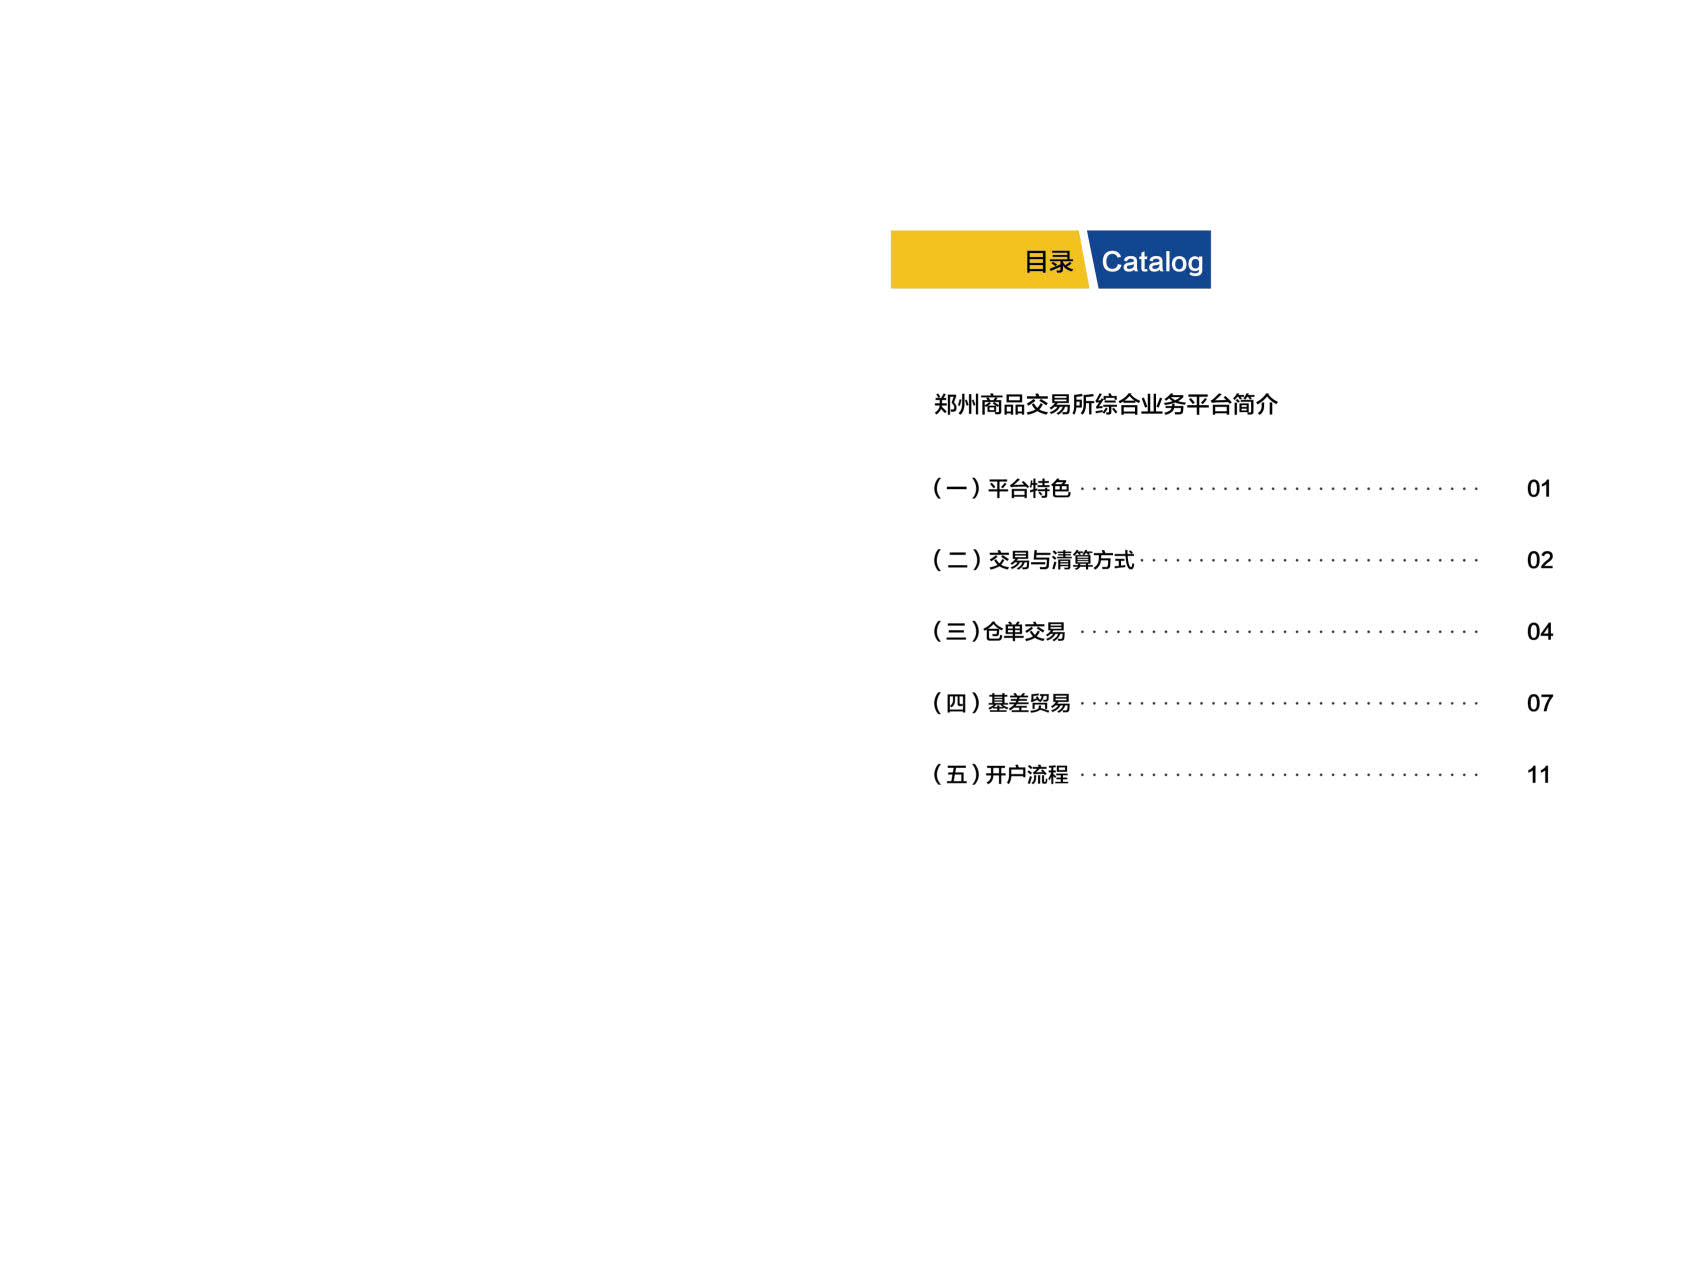 综合业务平台——郑商所仓单交易和基差贸易宣传手册_2.jpg